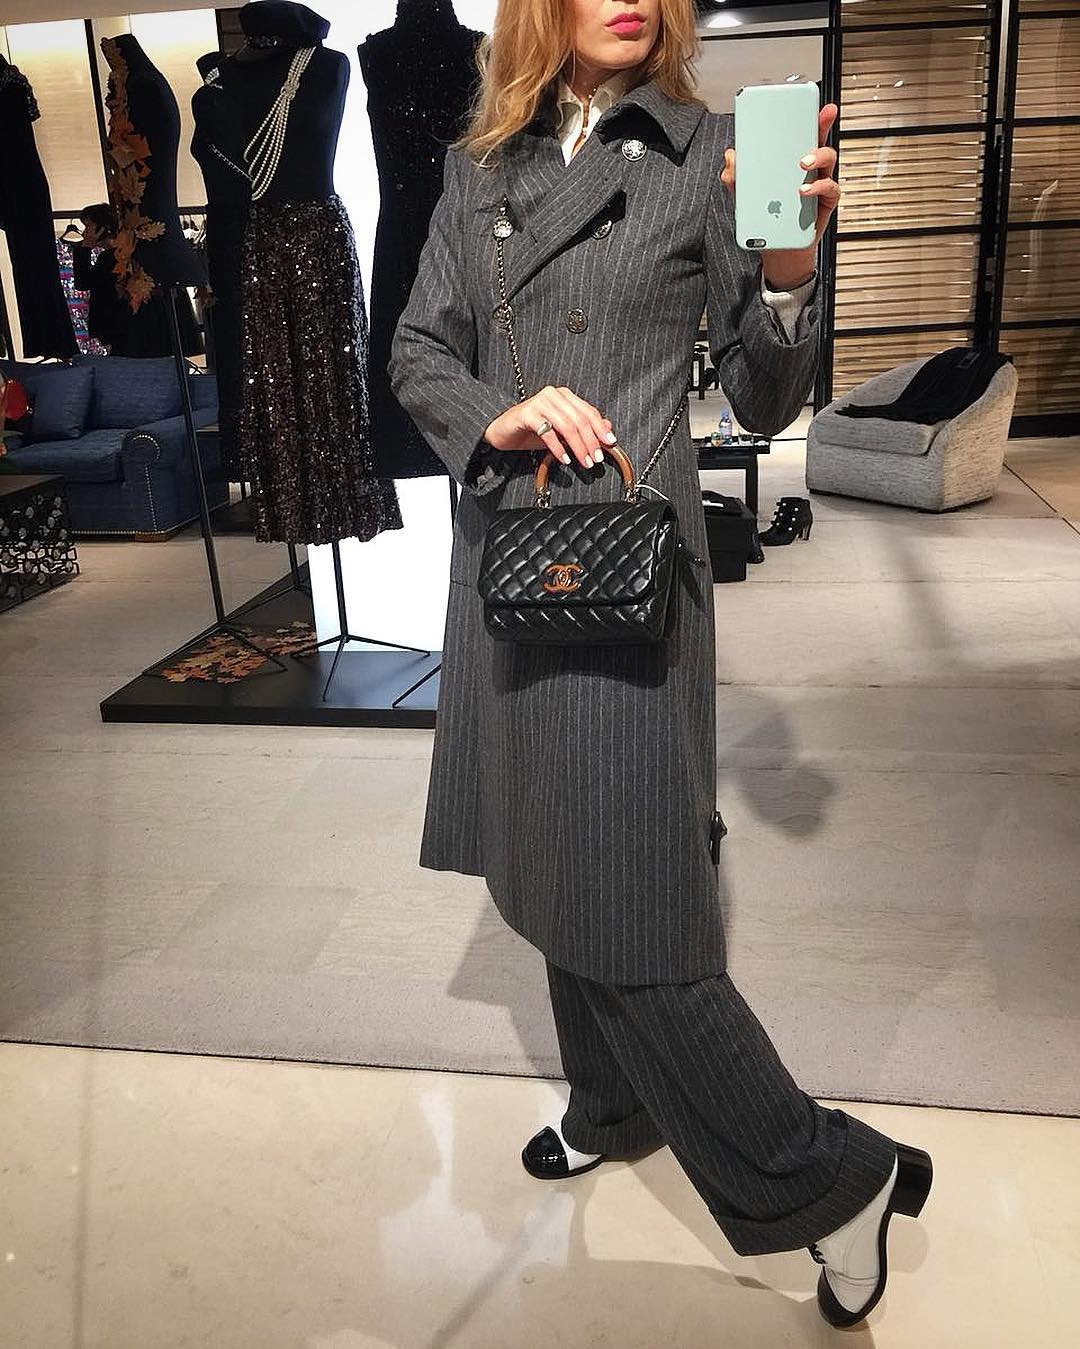 Chanel Coco Handle Bag With Elaphe Handle Bragmybag